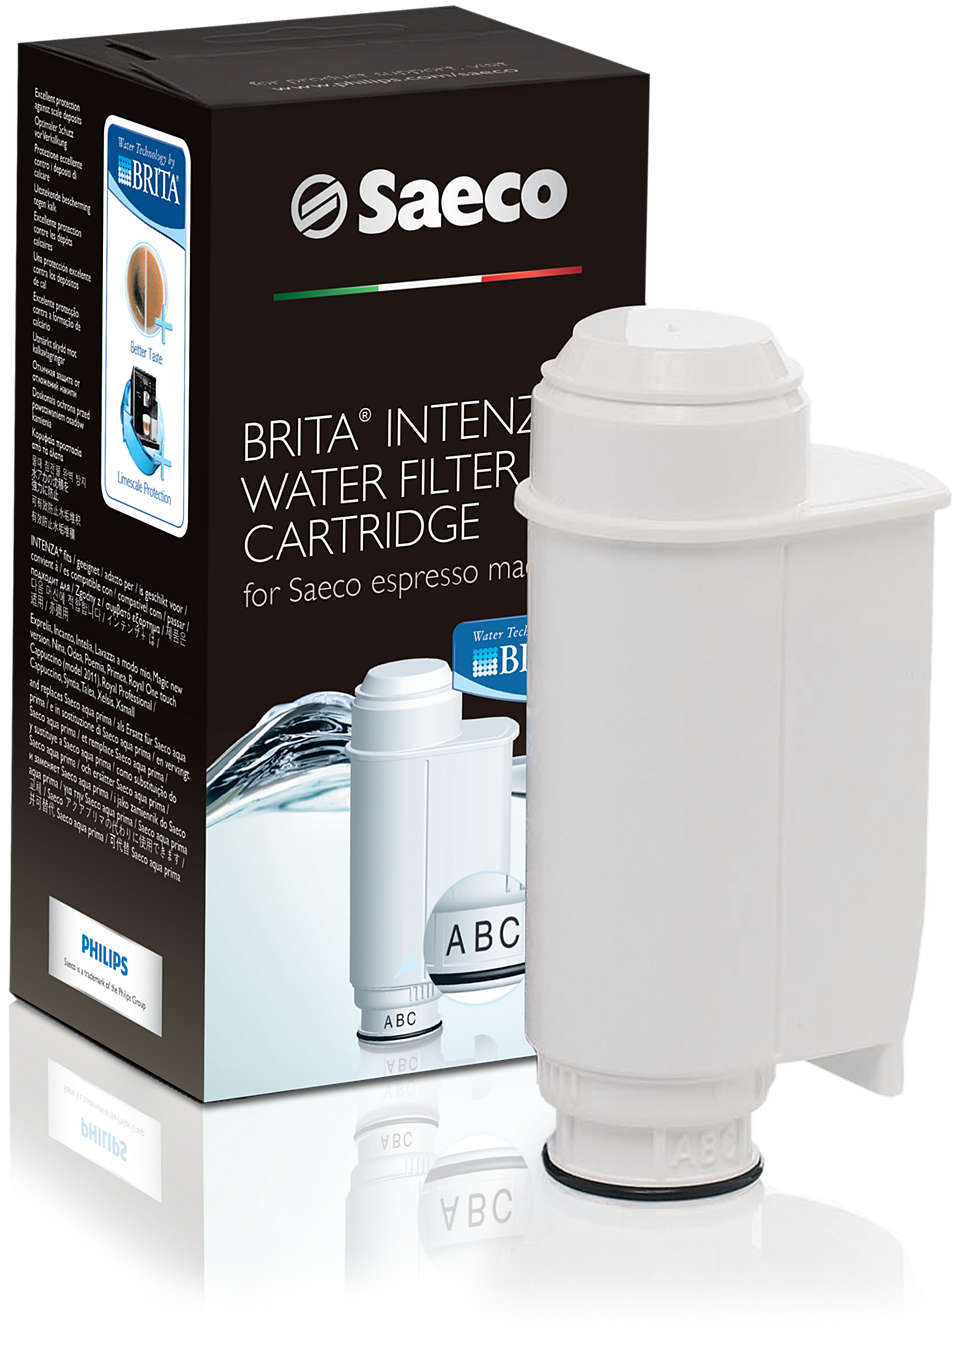 Saeco Aqualogis Water Filter Compatible with Brita Intenza CA6702/00 151081 RI9113 Gaggia and Philips 